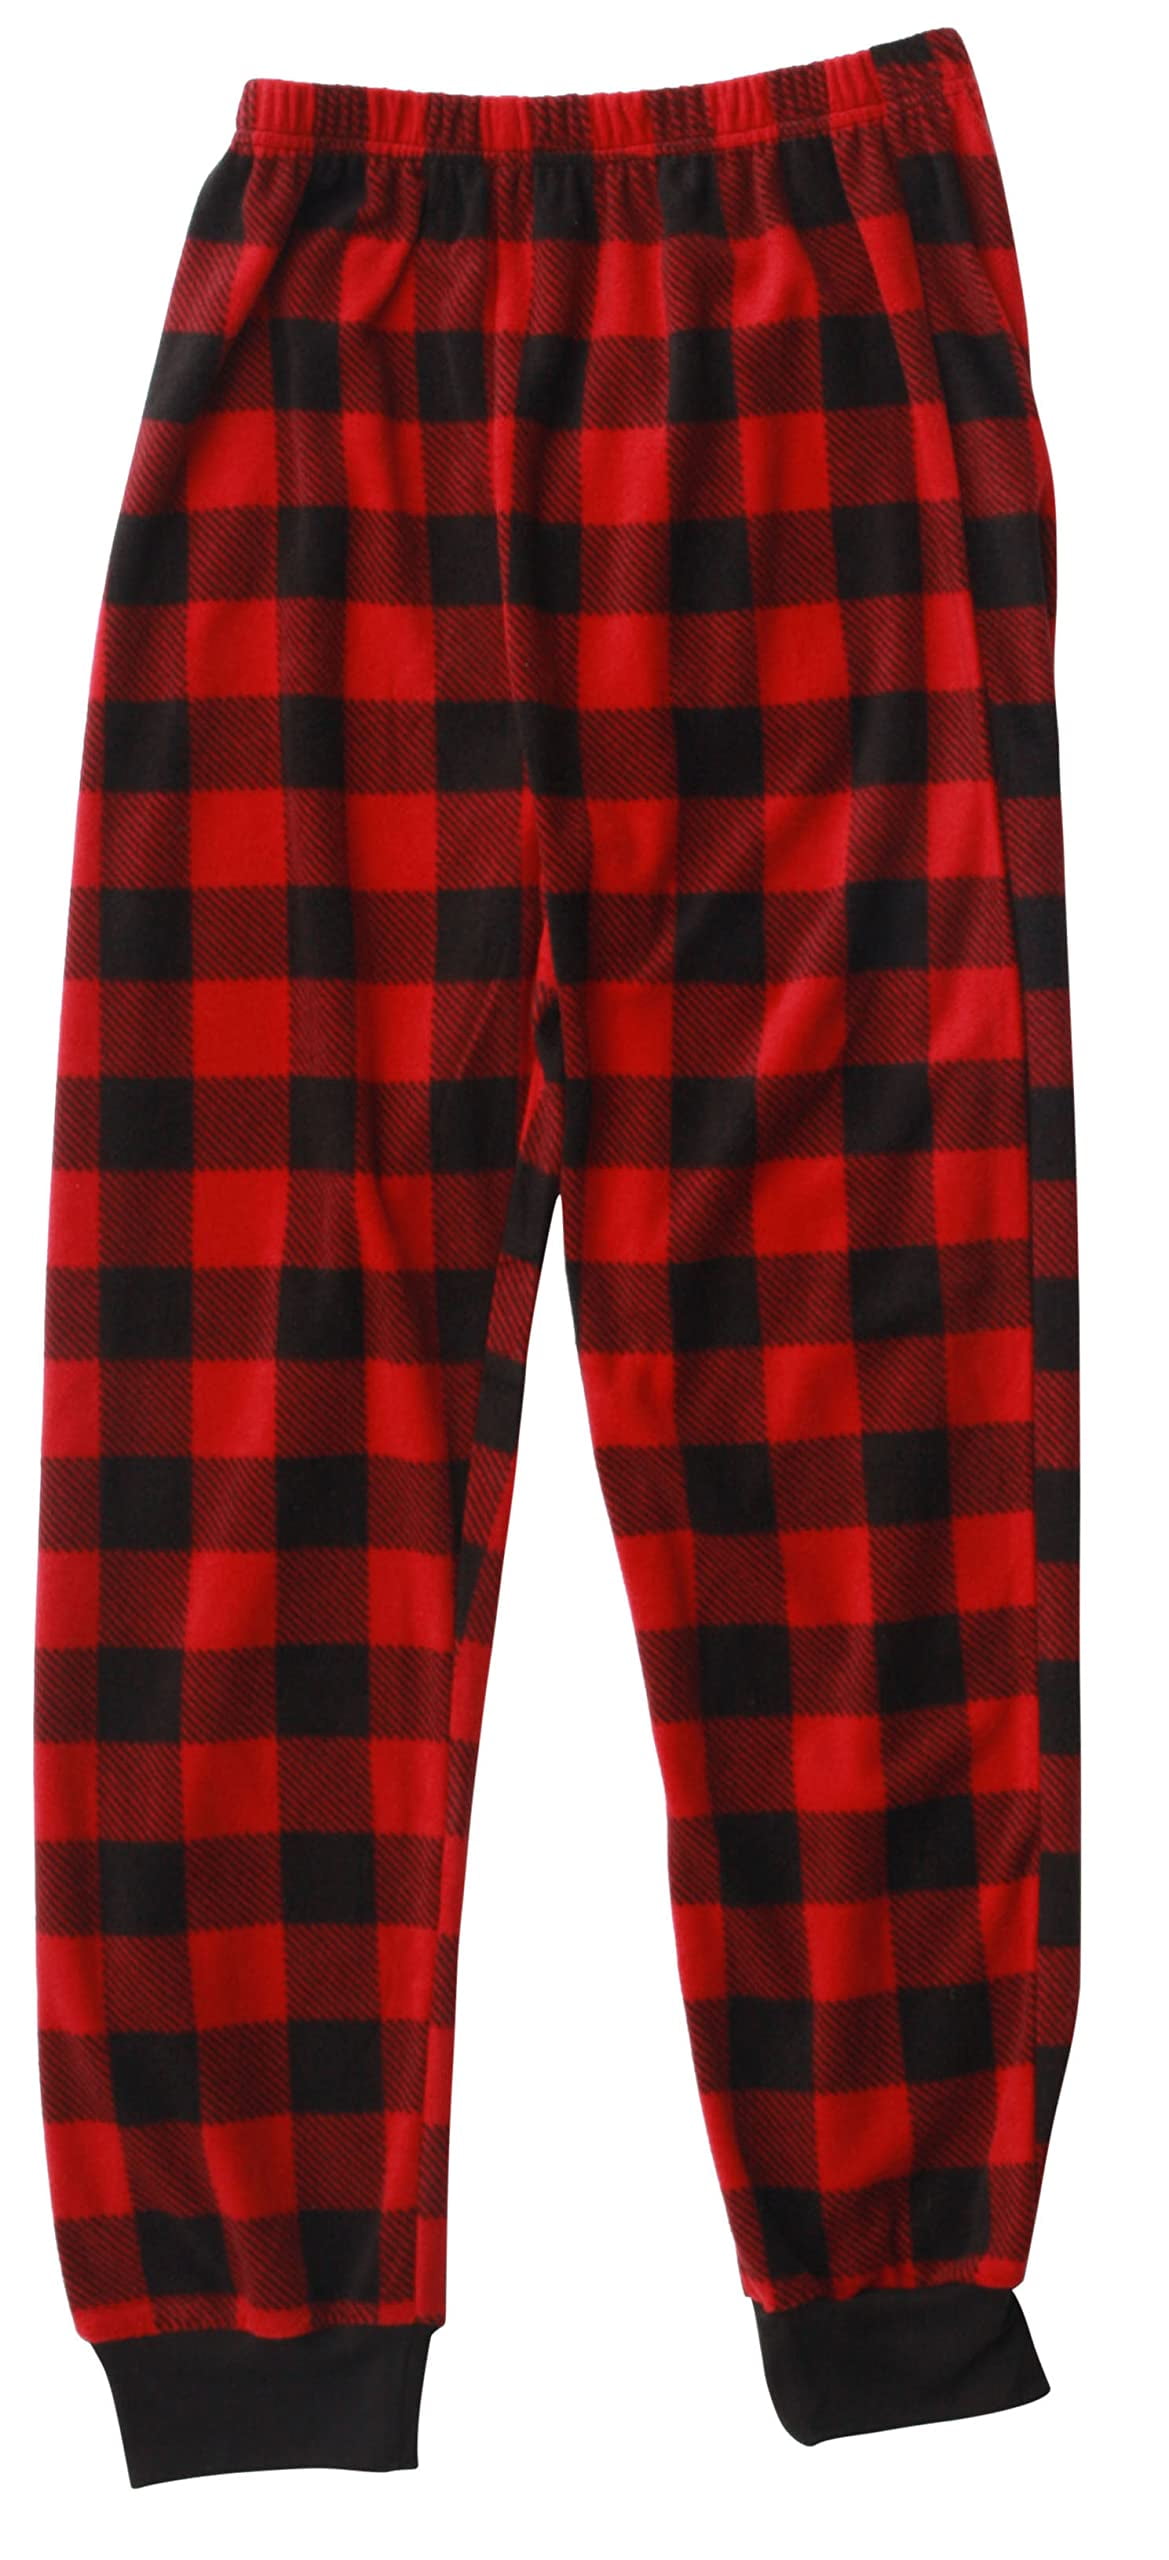 Prince of Sleep Boys' Plush Fleece Pajama Pants - Warm and Cozy